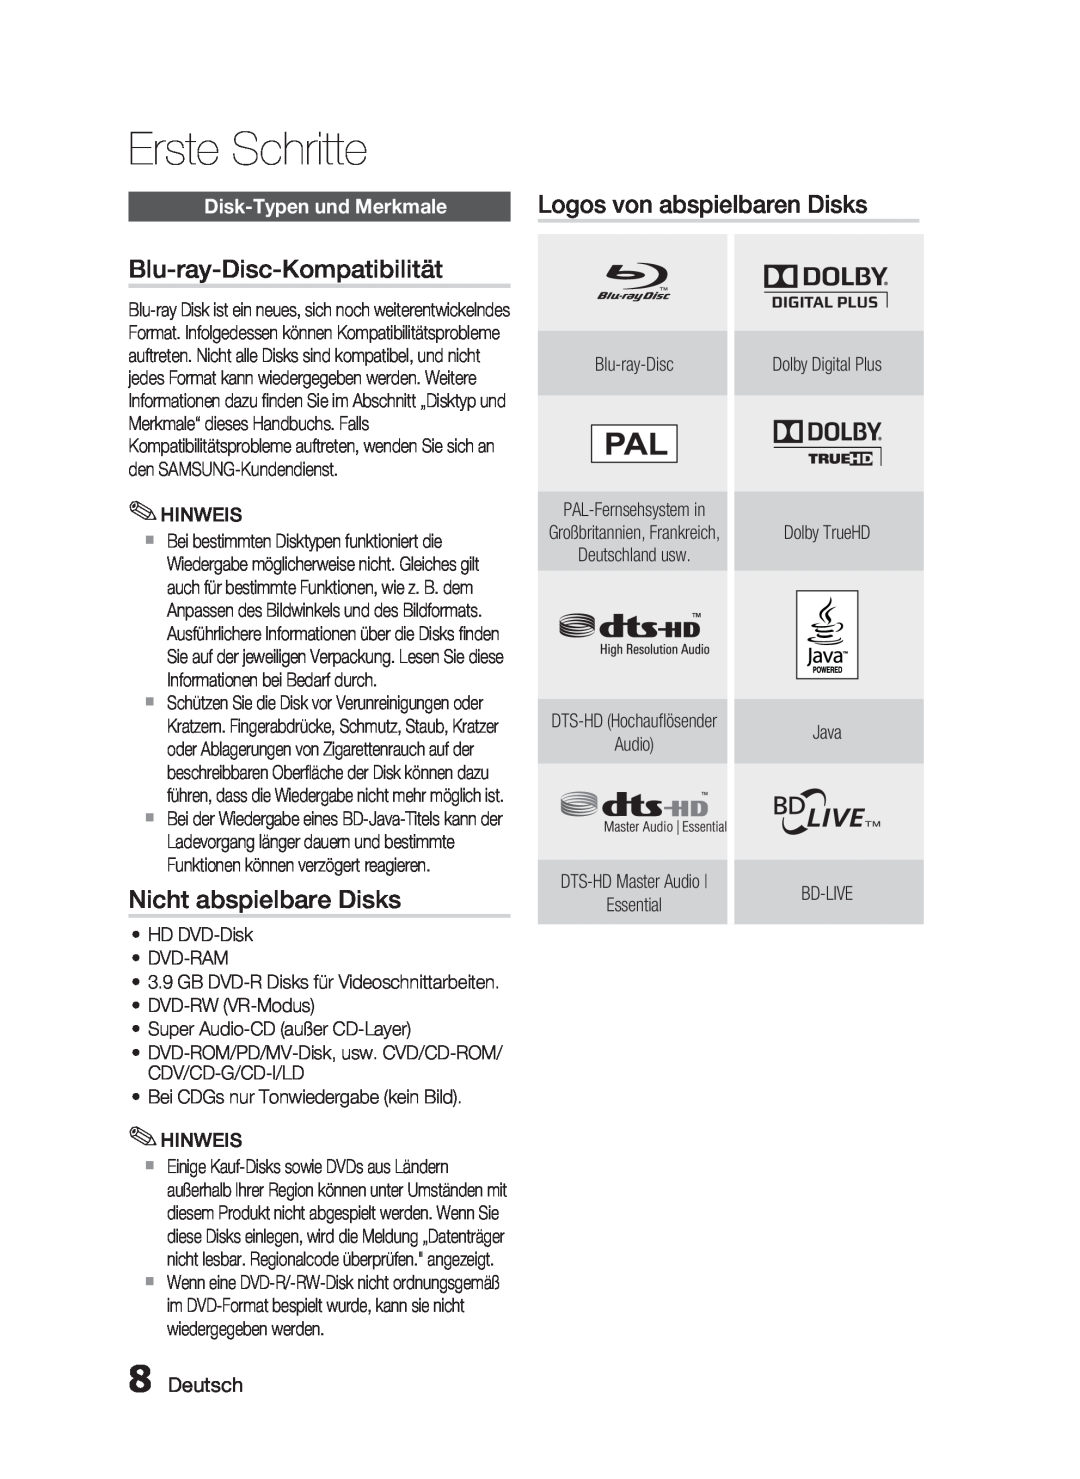 Samsung HT-C6200/XEF, HT-C6200/XEN Blu-ray-Disc-Kompatibilität, Nicht abspielbare Disks, Disk-Typen und Merkmale, Deutsch 